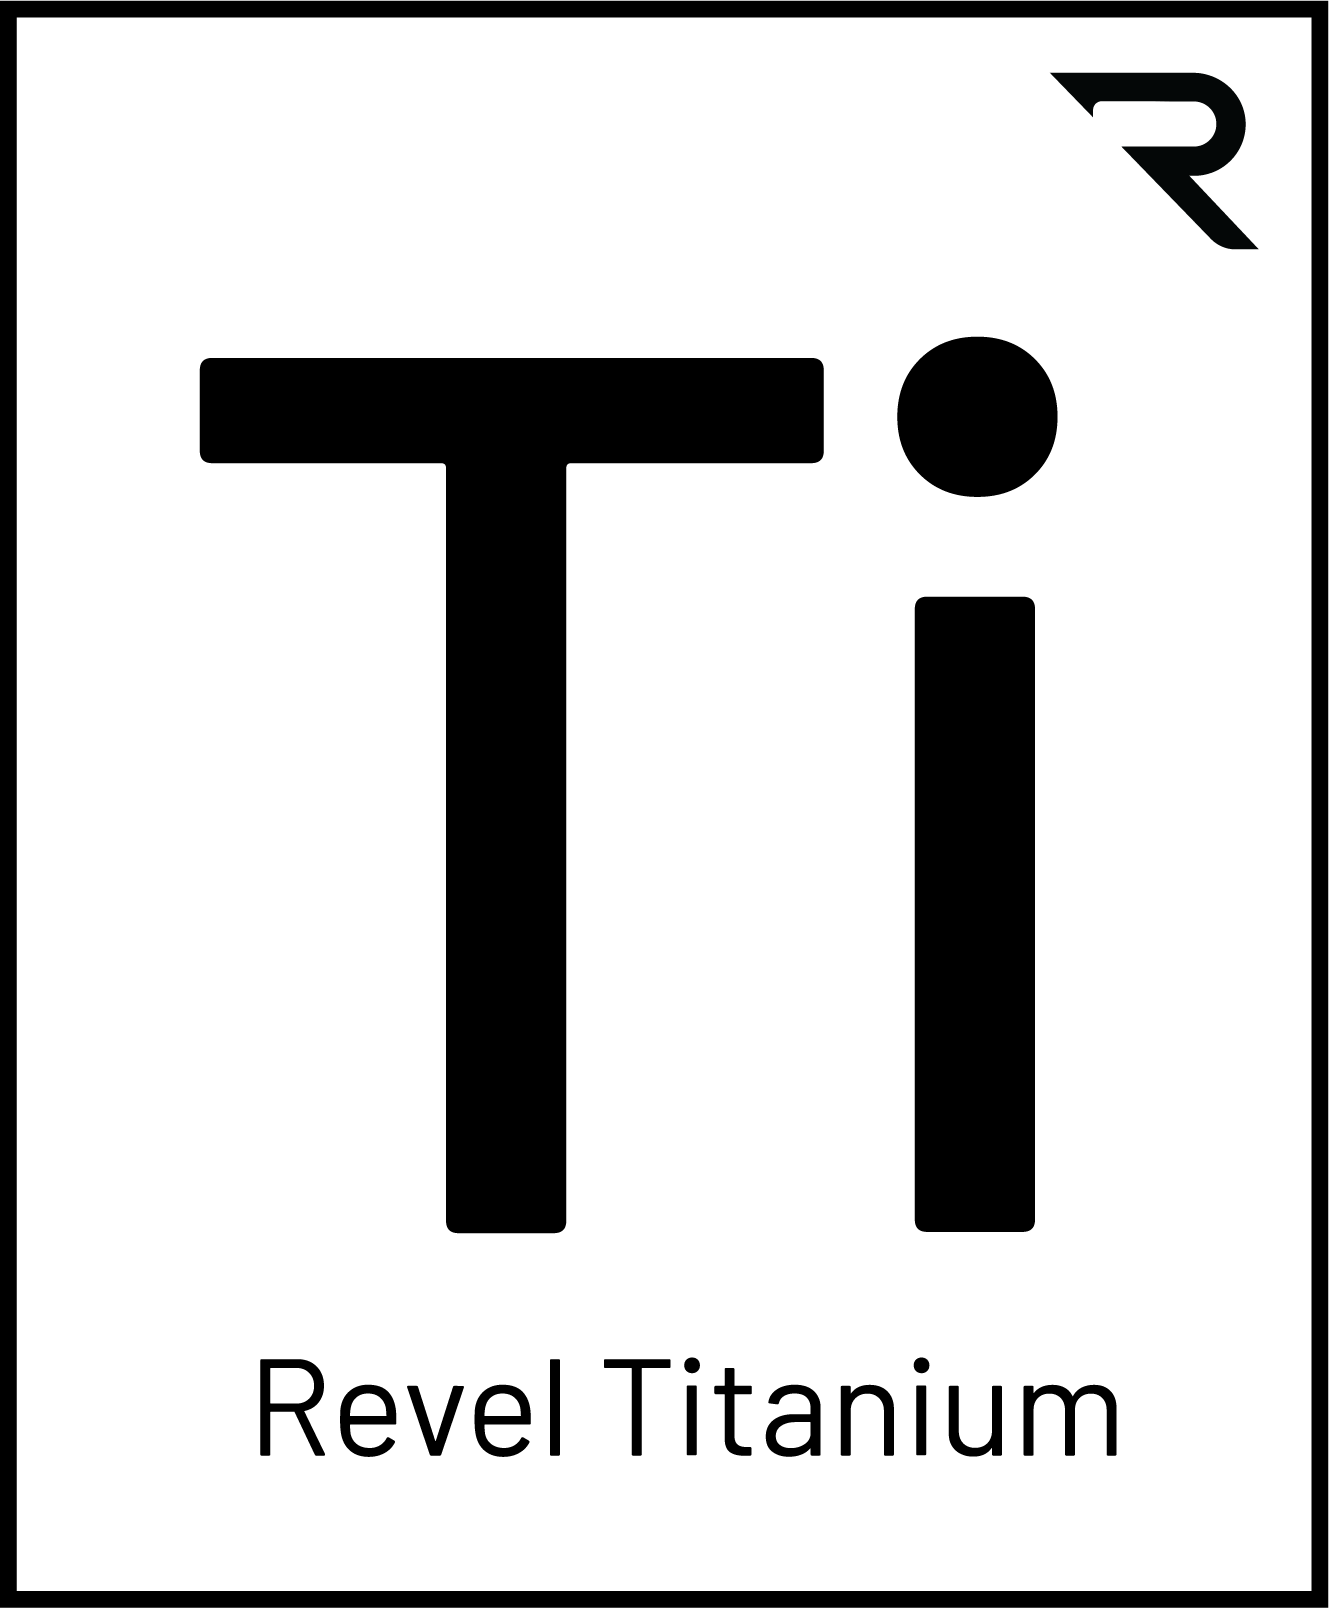 Revel Titanium